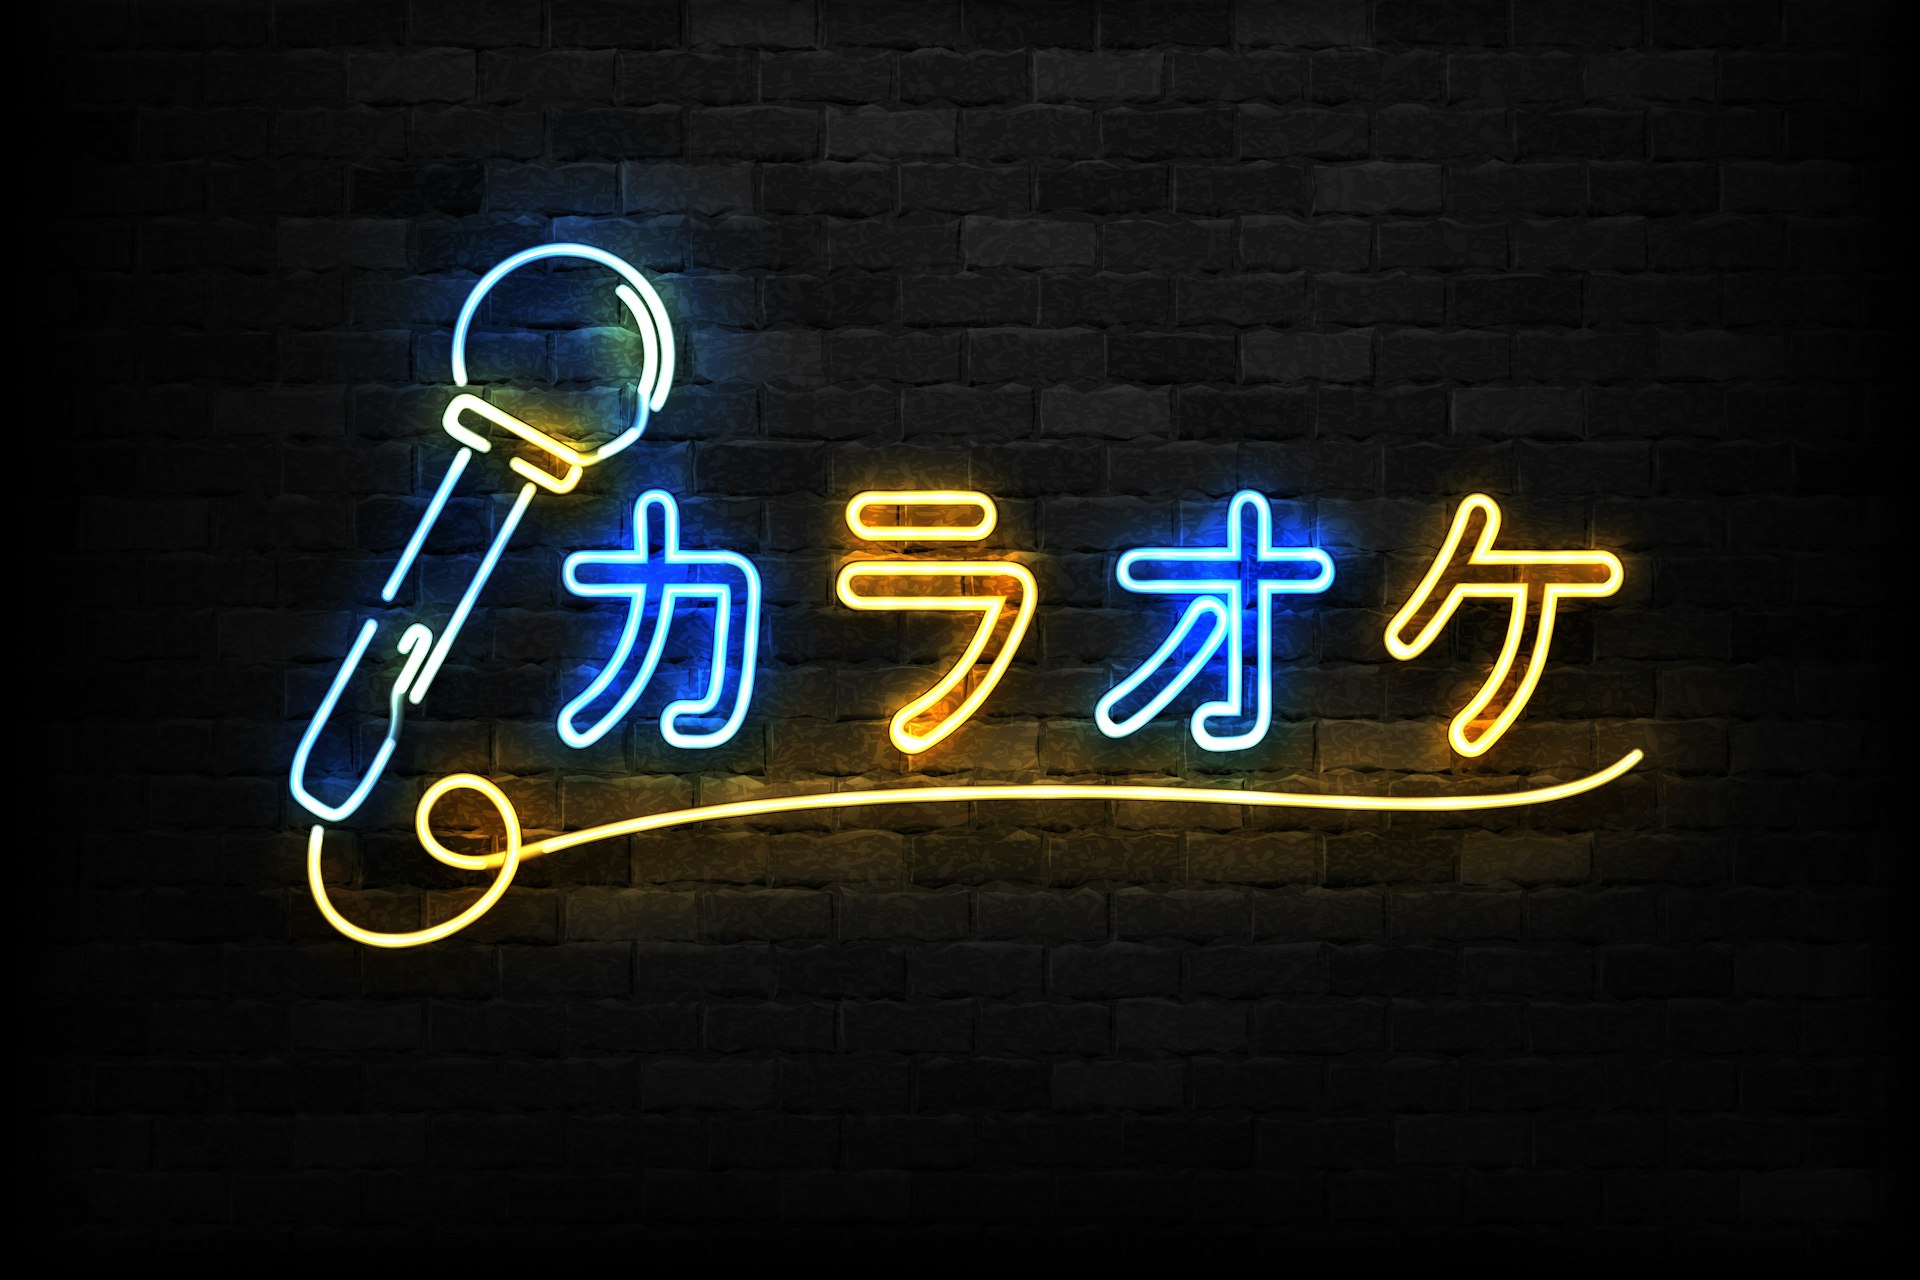 A neon karaoke sign in Japanese